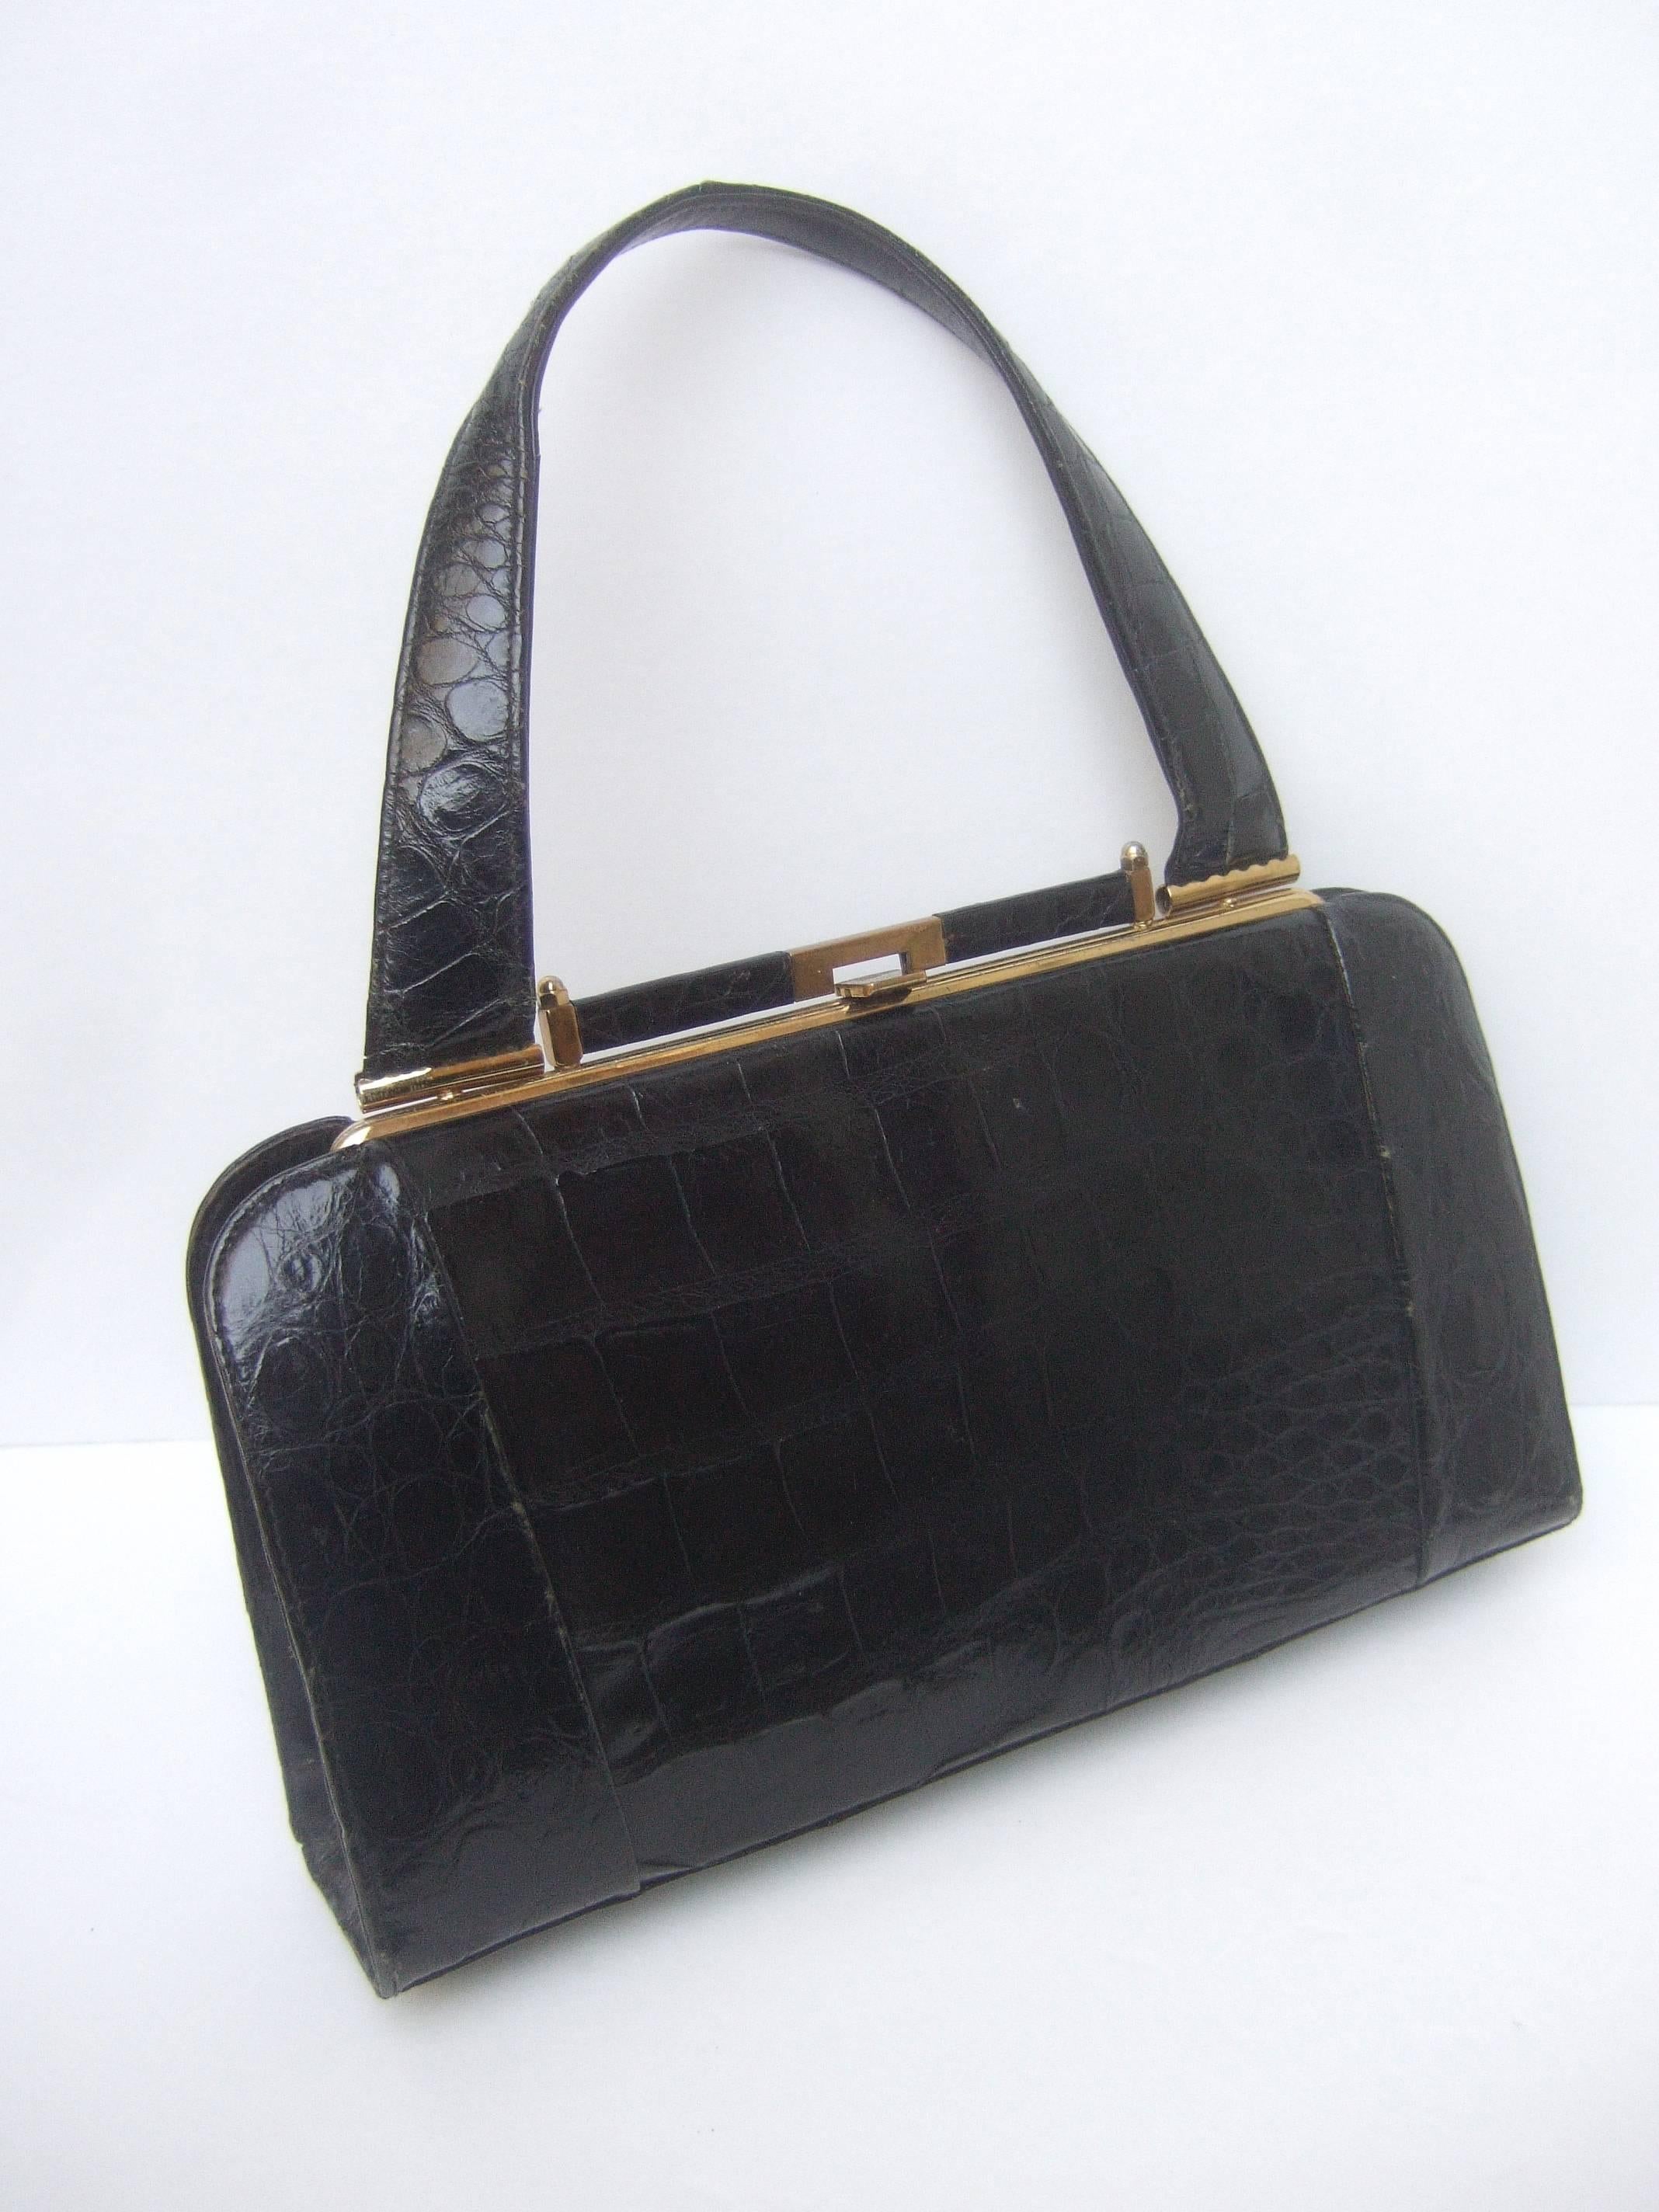 Glatte Ebenholz Vintage Alligator Leder Handtasche ca 1960s
Die stilvolle Retro-Handtasche ist mit glänzendem Schwarz überzogen 
alligatorenhaut

Die Handtasche ist mit einem schlanken Design
vergoldete Metallspange und Beschläge
Der Innenraum ist